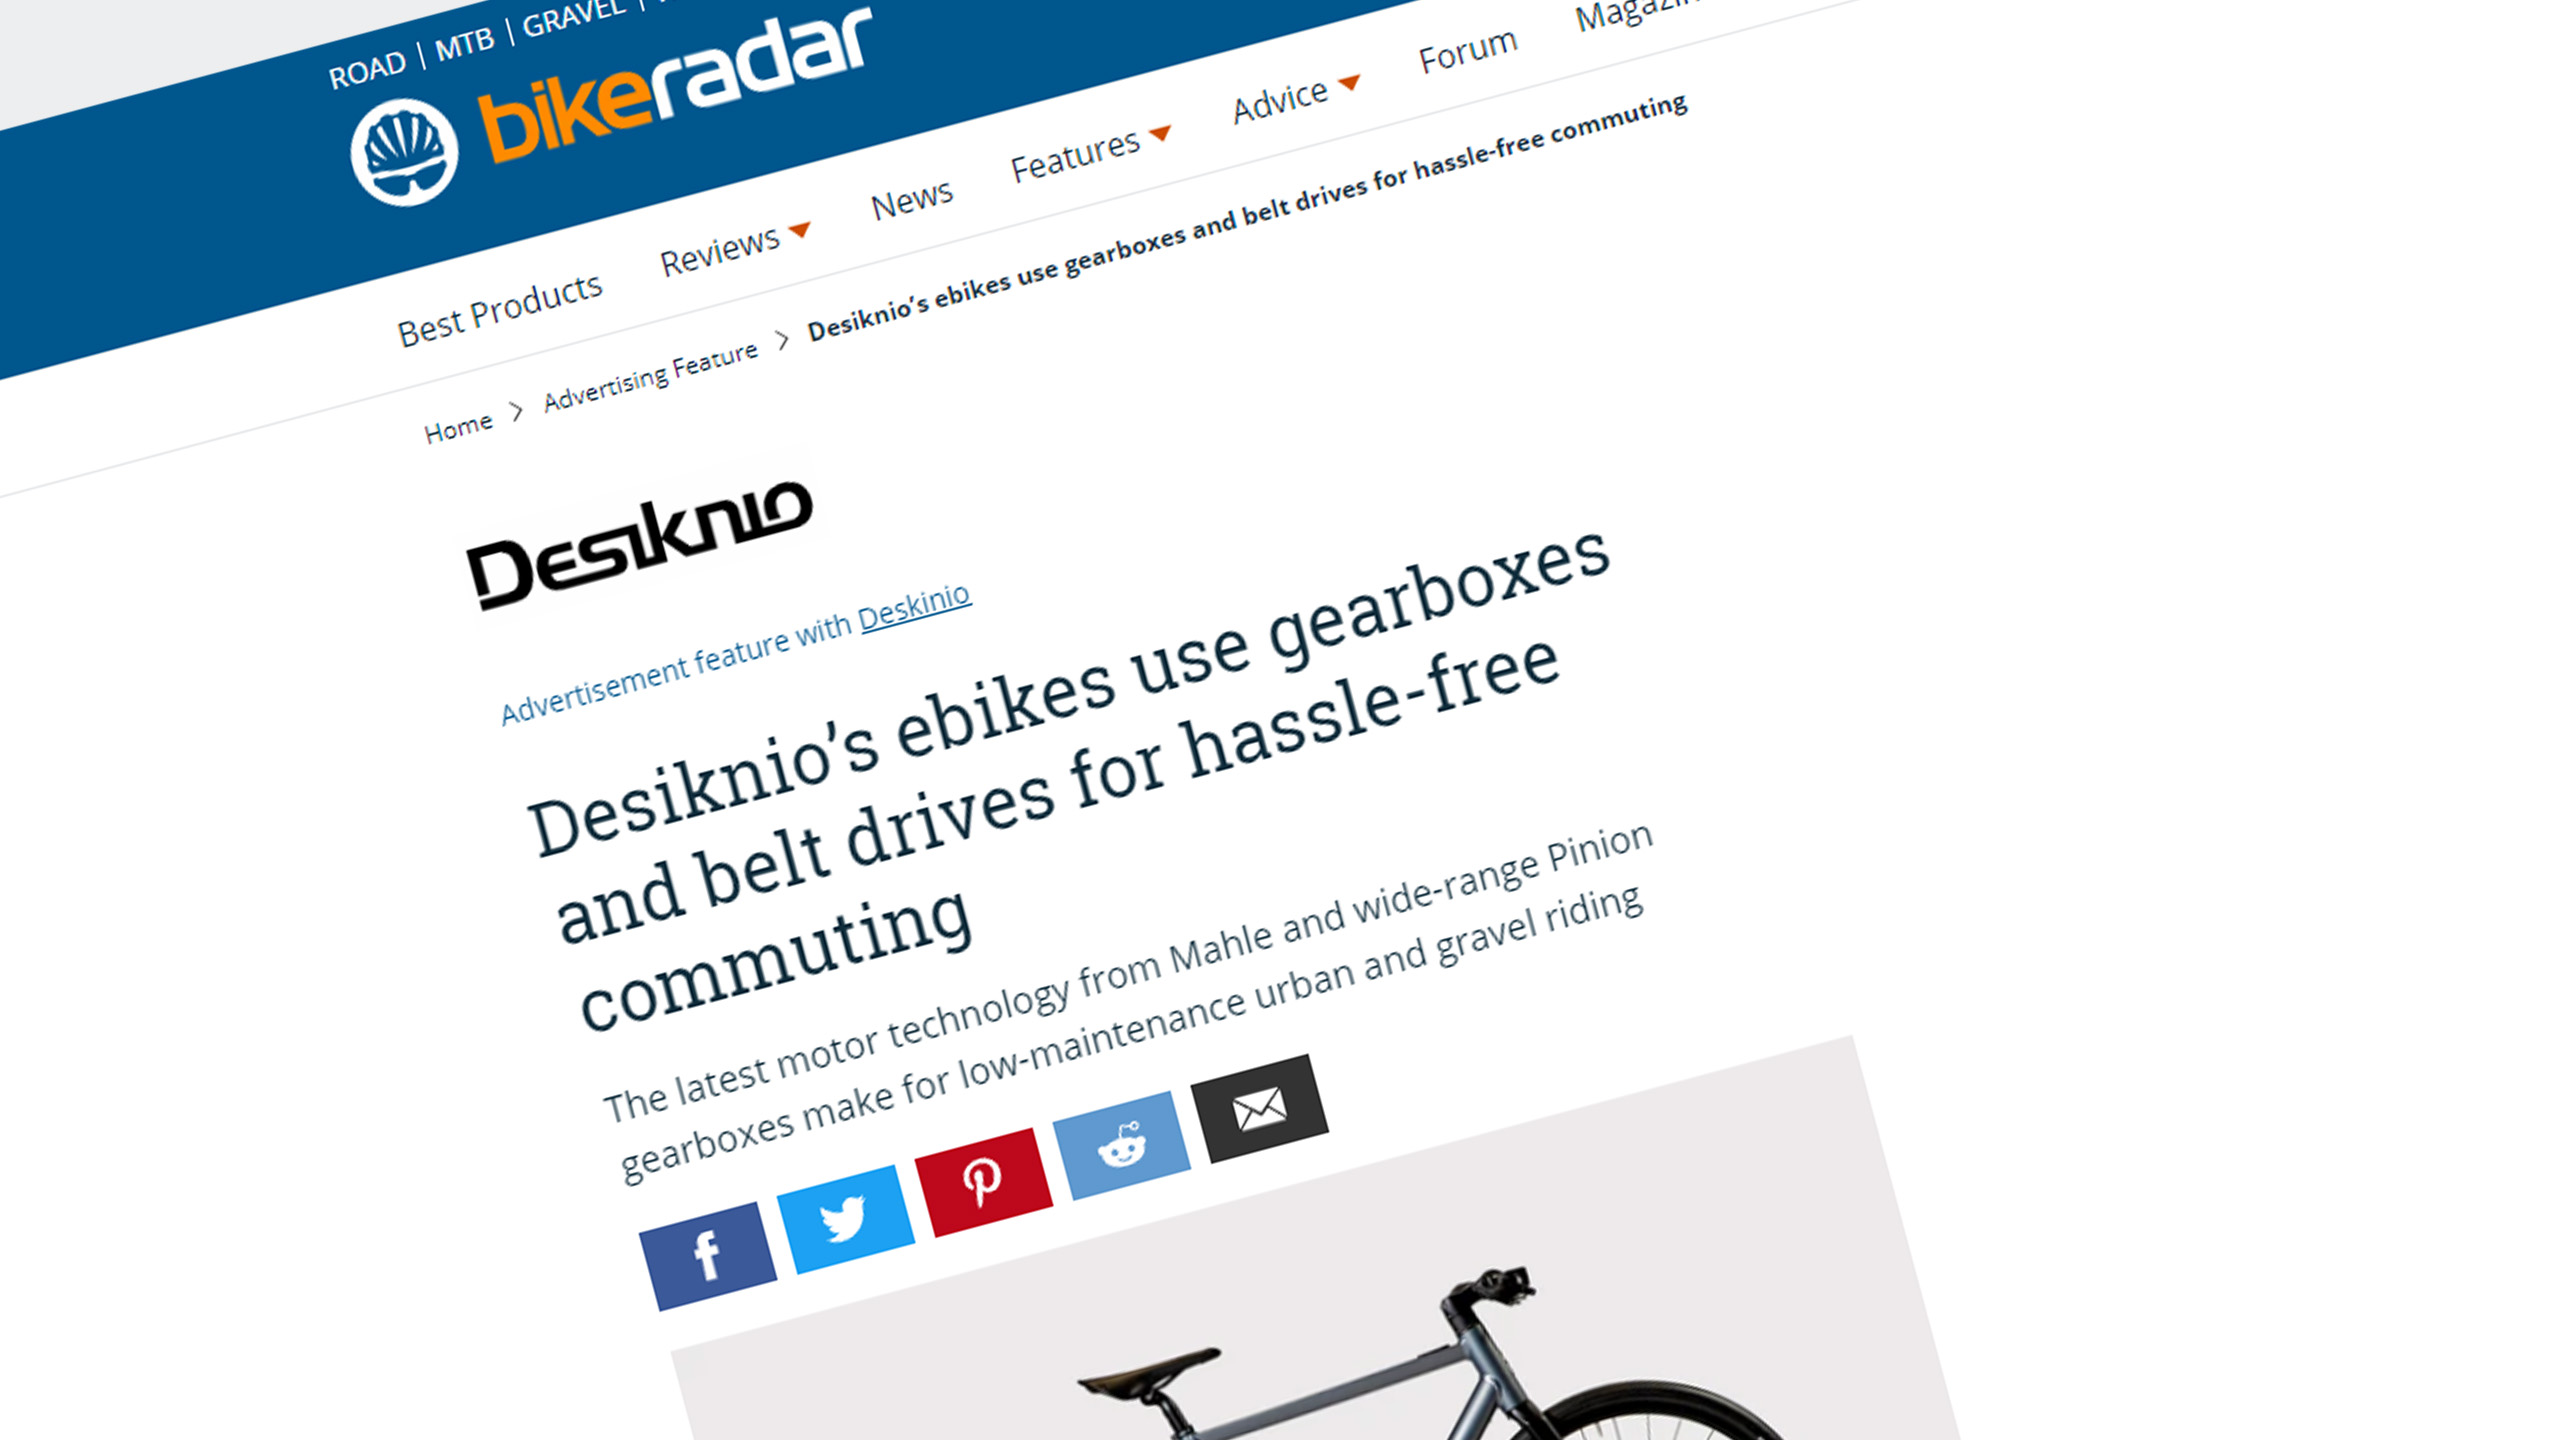 BikeRadar Magazine Review – Desiknio E-bike range